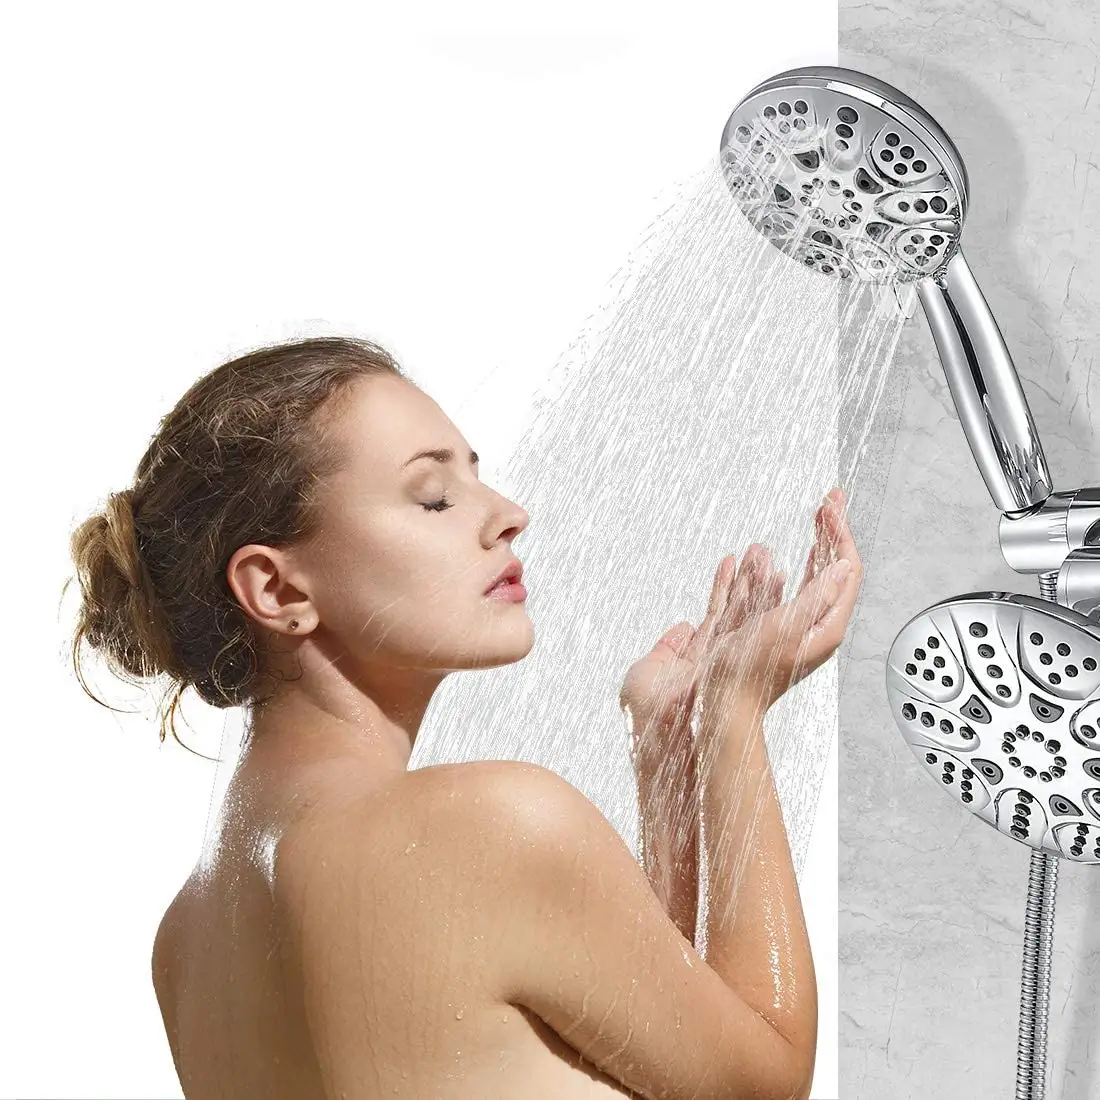 Amazn sıcak satış CUPC 6 fonksiyonları ABS Spa el duş başlığı ve yağmur biçimli duş Combo çift 2 in 1 duş başlığı sistemi